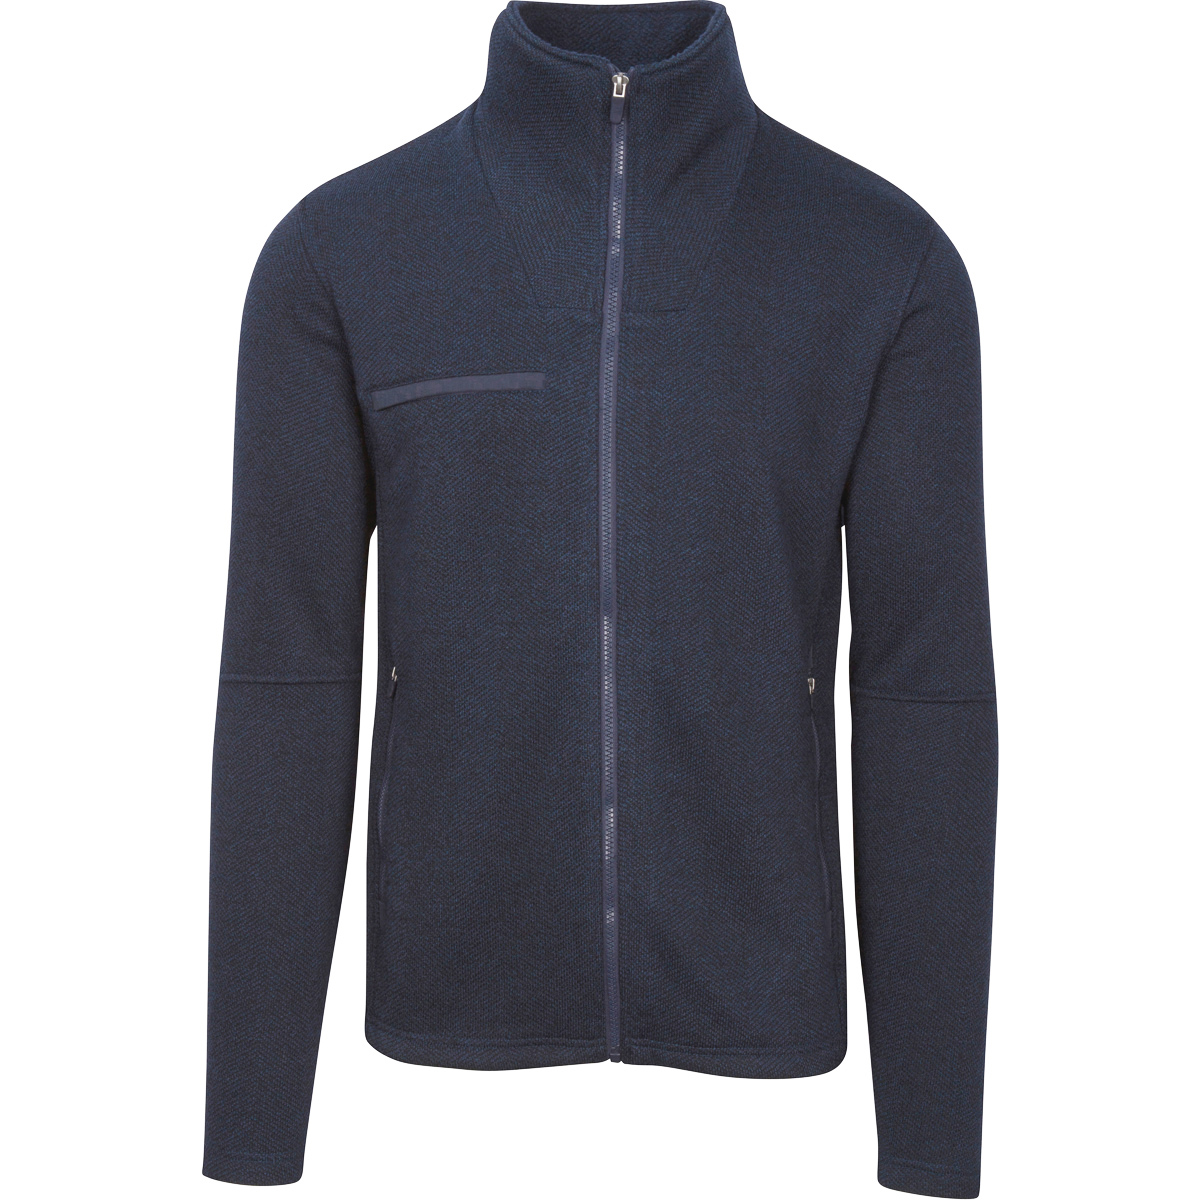 Fossa Apparel 3725 - Men's Kentfield Sweater Fleece Jacket